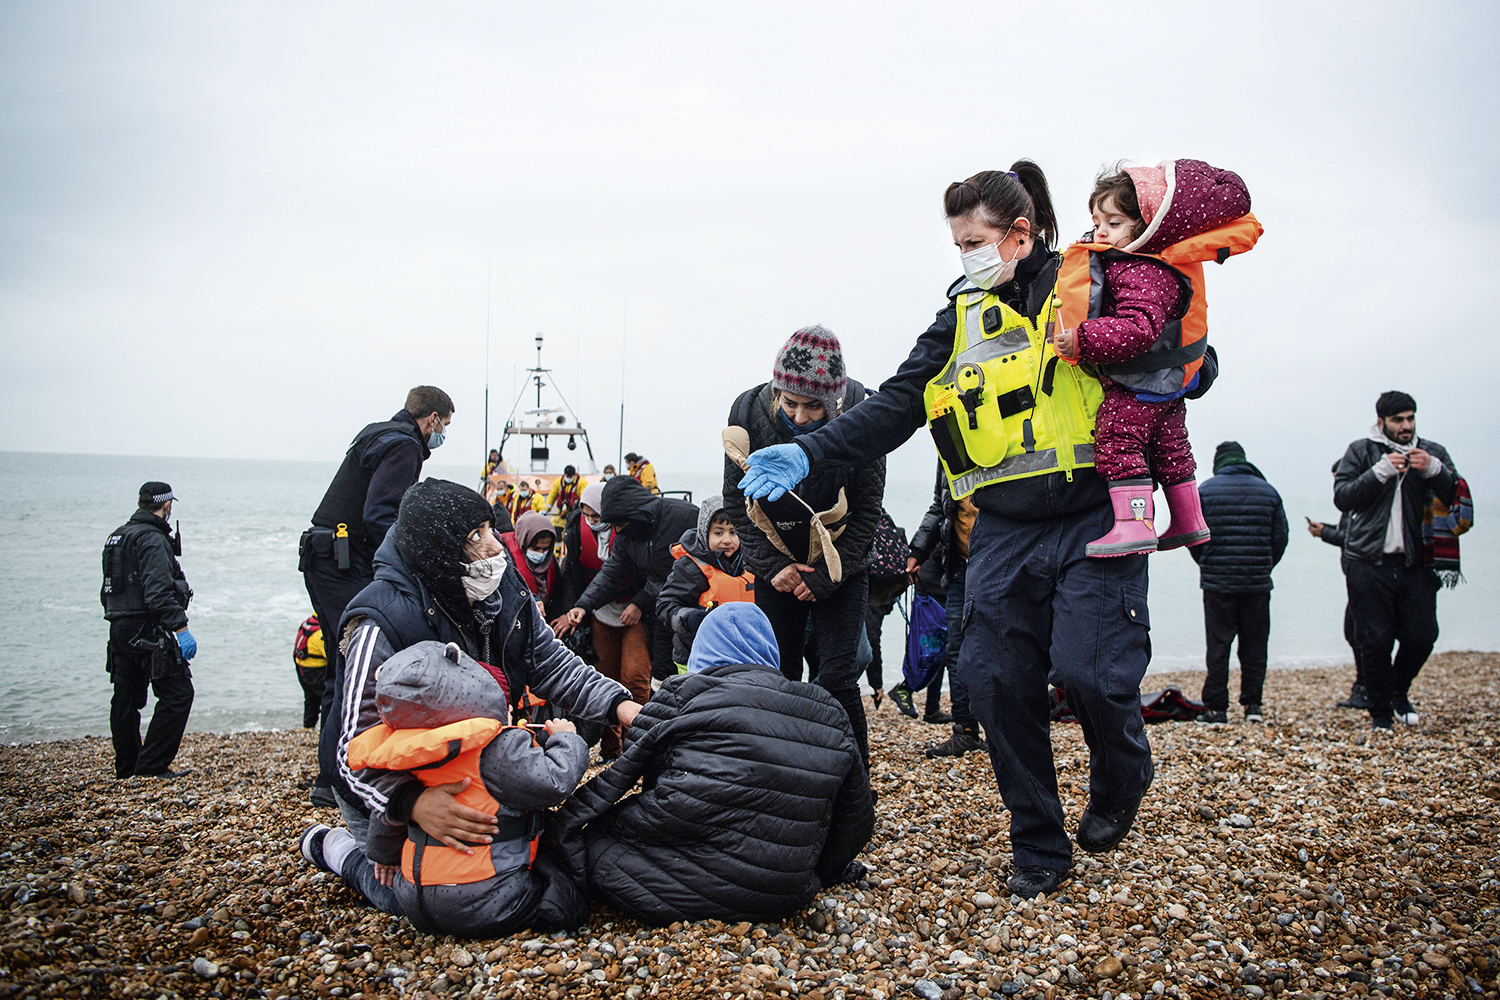 SOBREVIVENTES - Pessoas são resgatadas depois do acidente e levadas a uma praia na costa britânica: travessia de alto risco que atrai cada vez mais gente -